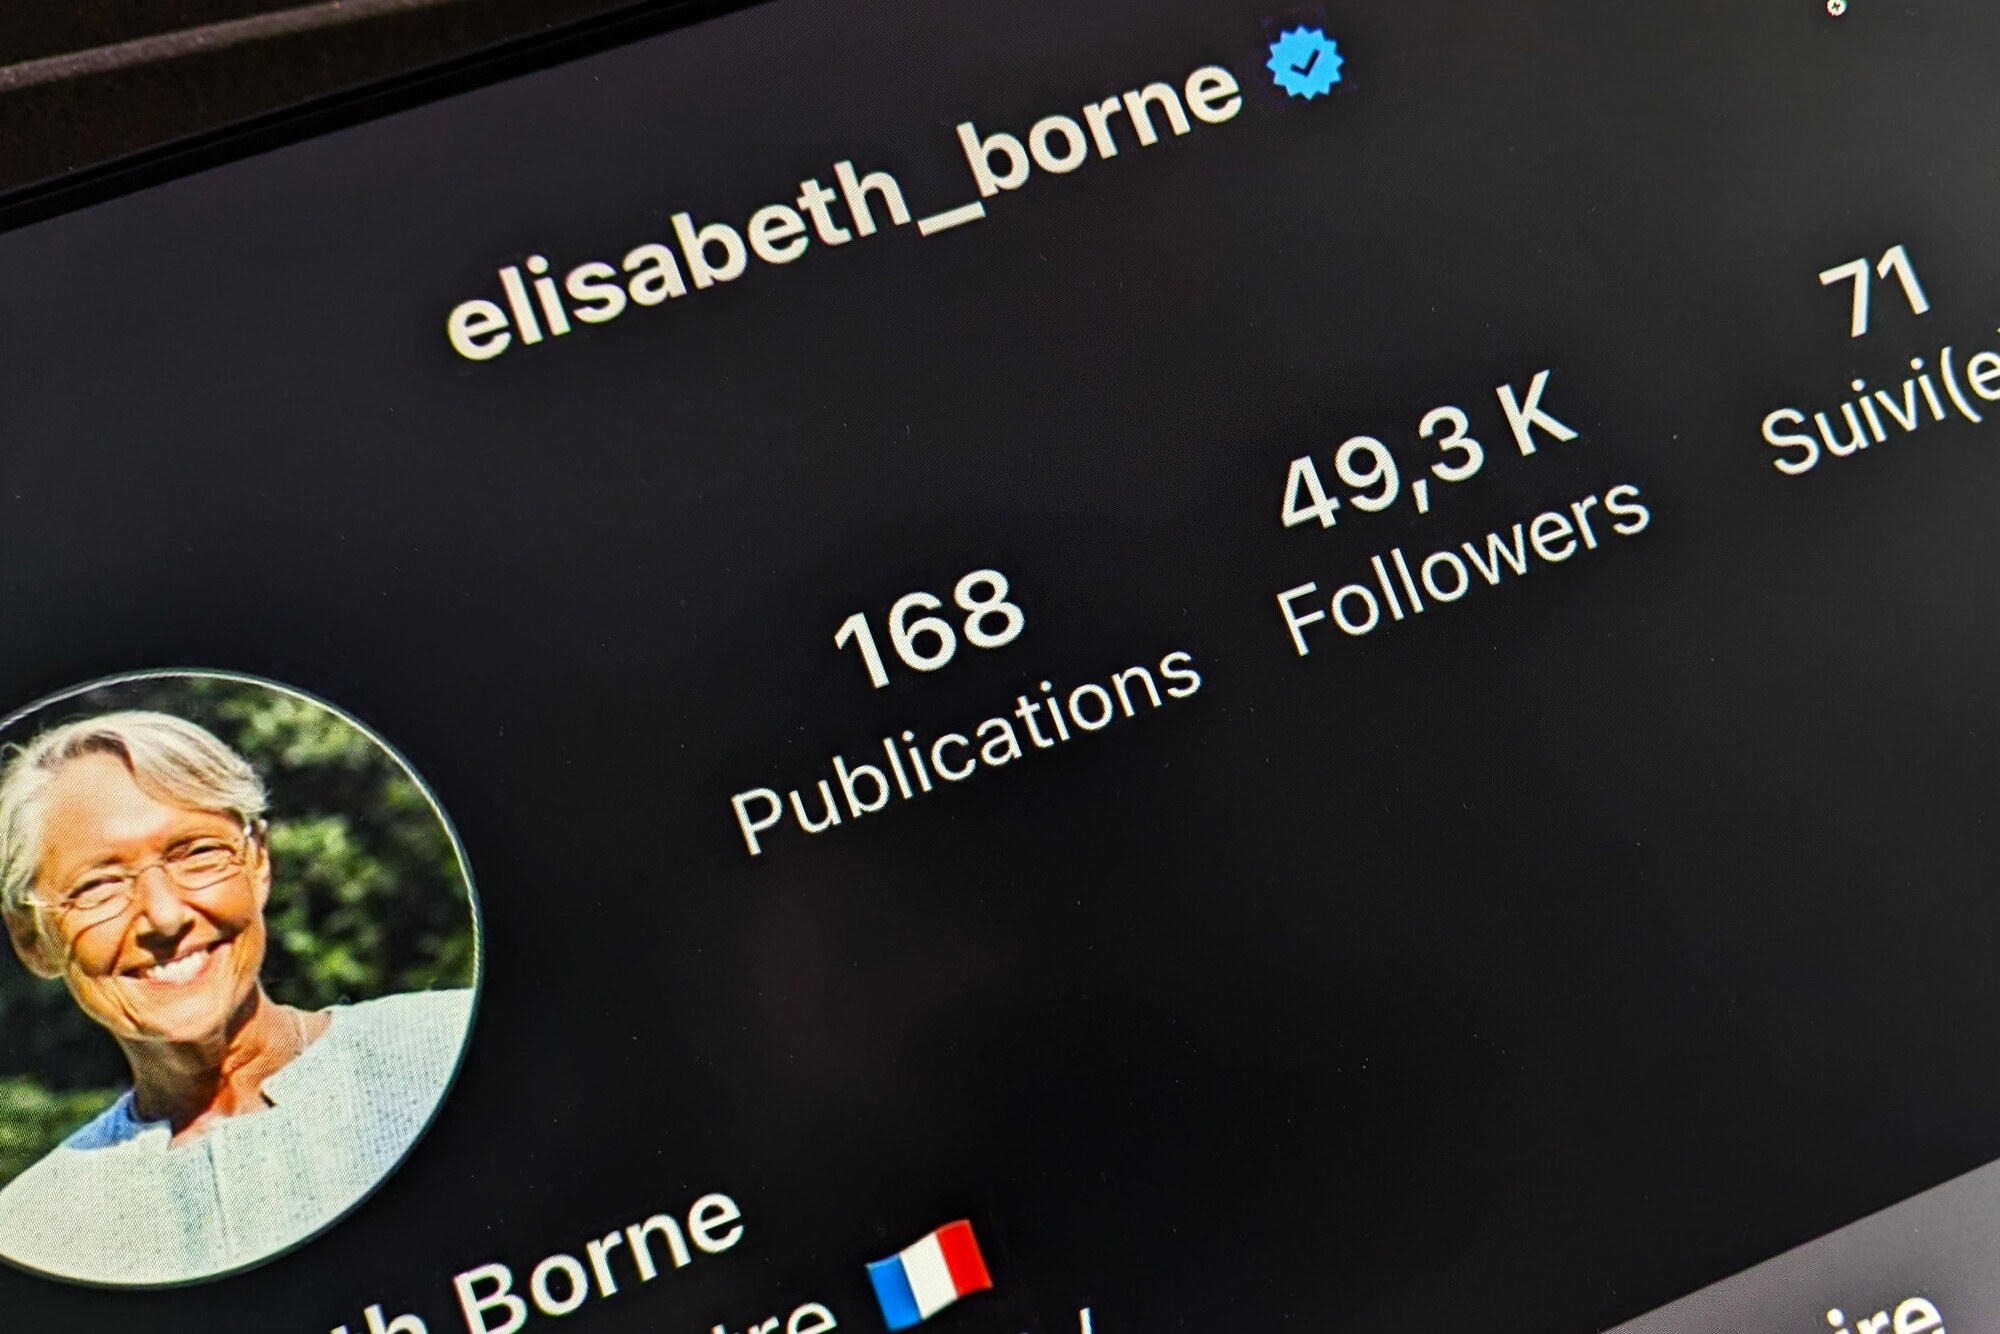 Le compte Instagram d'Elisabeth Borne a brièvement compté 49.3 K abonnés, très brièvement